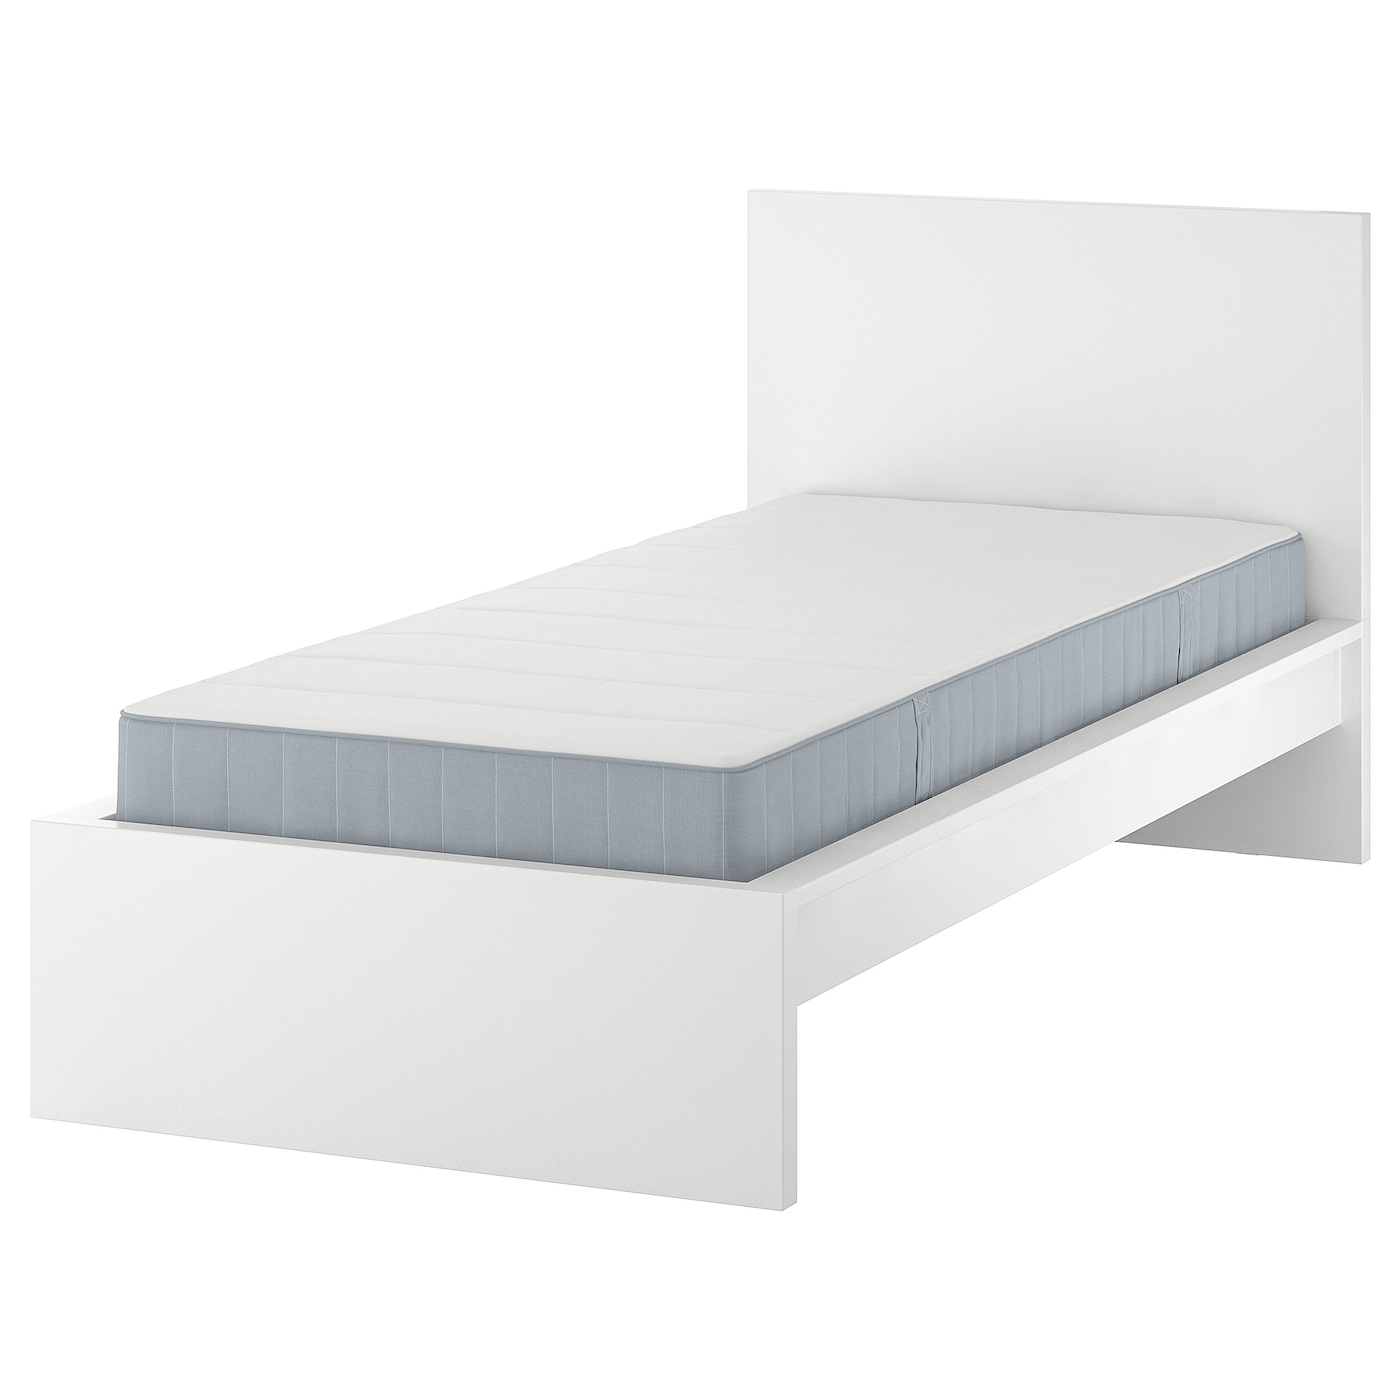 Кровать - IKEA MALM, 200х90 см, матрас средне-жесткий, белый, МАЛЬМ ИКЕА